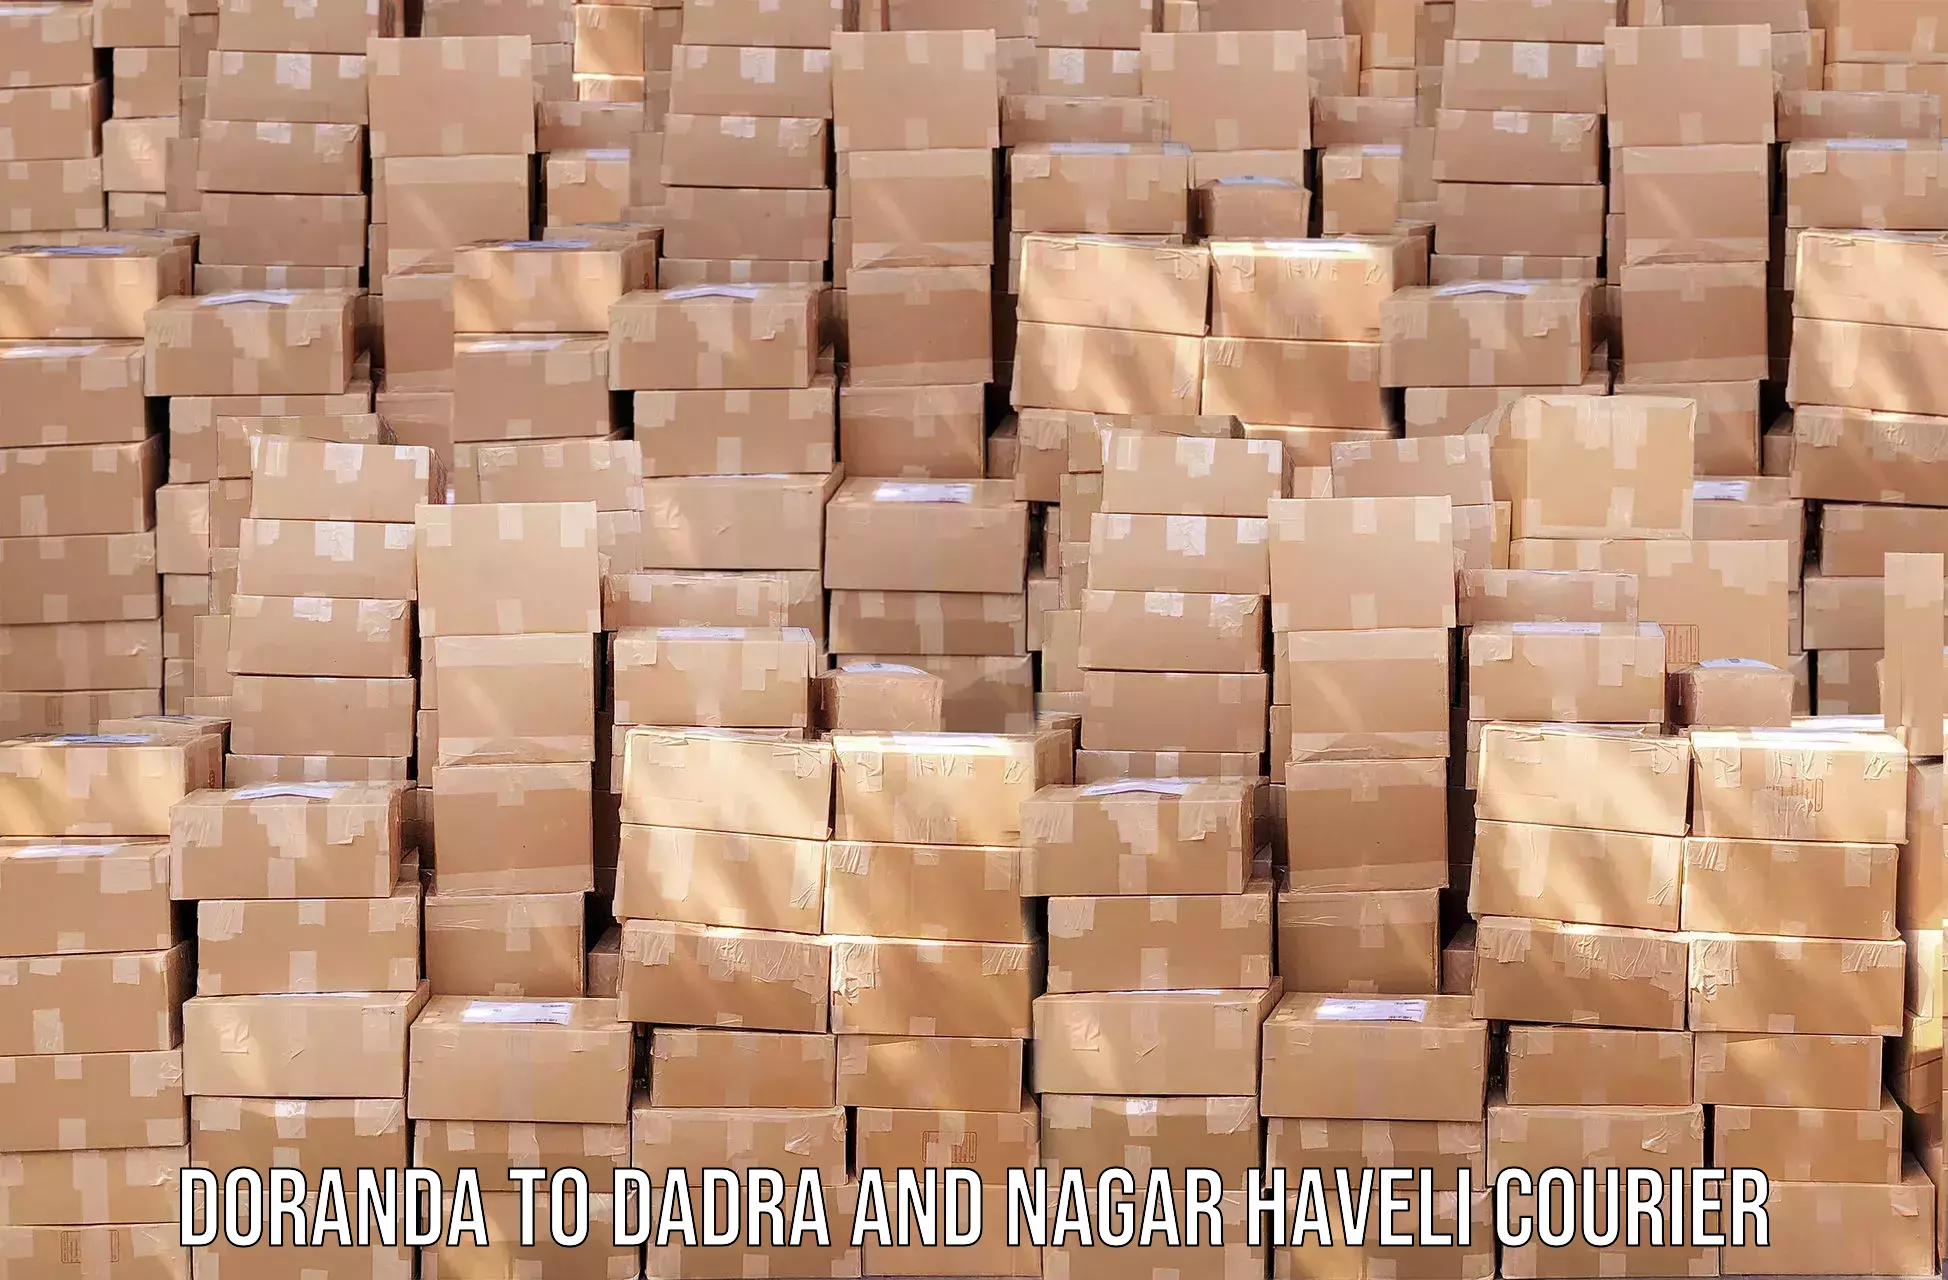 Courier service innovation Doranda to Dadra and Nagar Haveli